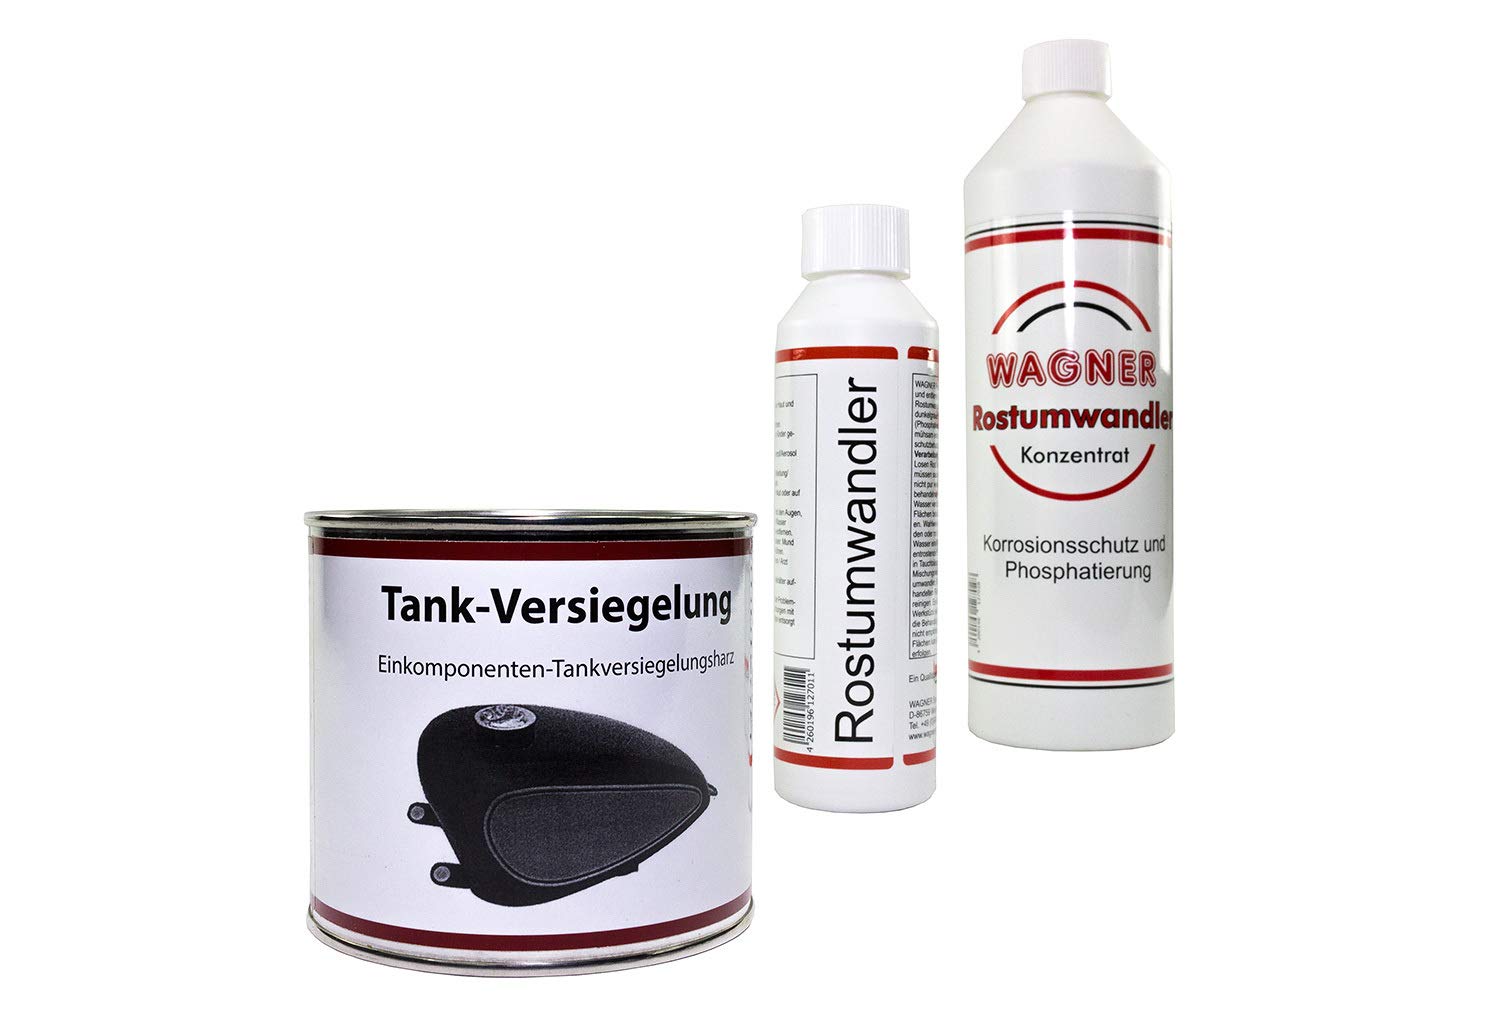 WAGNER Auto-Tankversiegelung Set - 070003 von WAGNER Spezialschmierstoffe GmbH & Co. KG